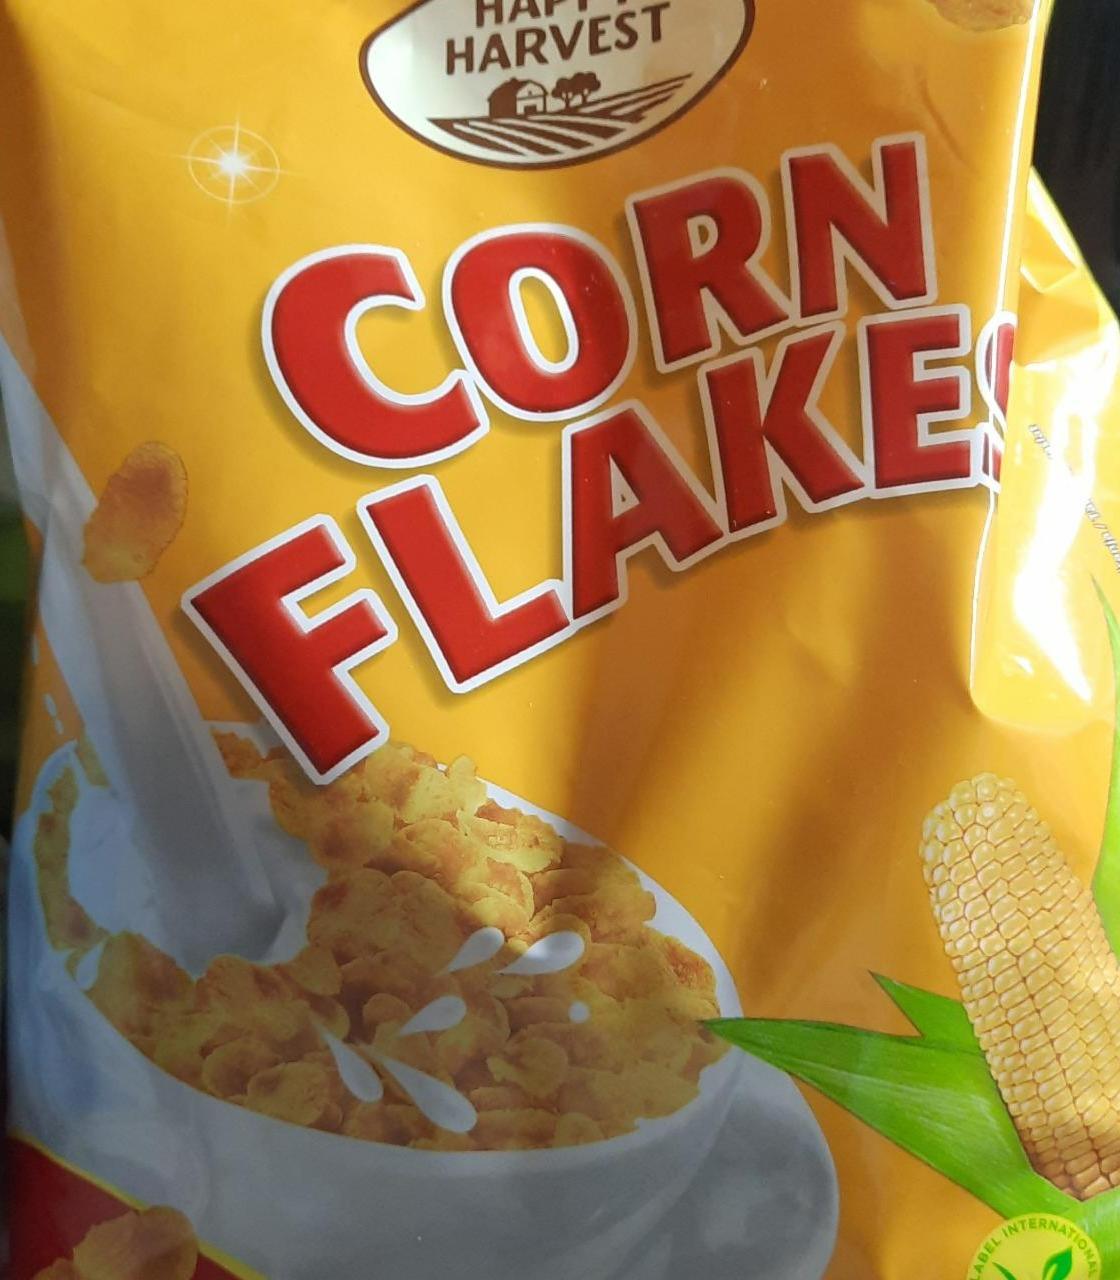 Fotografie - Corn flakes Happy Harvest